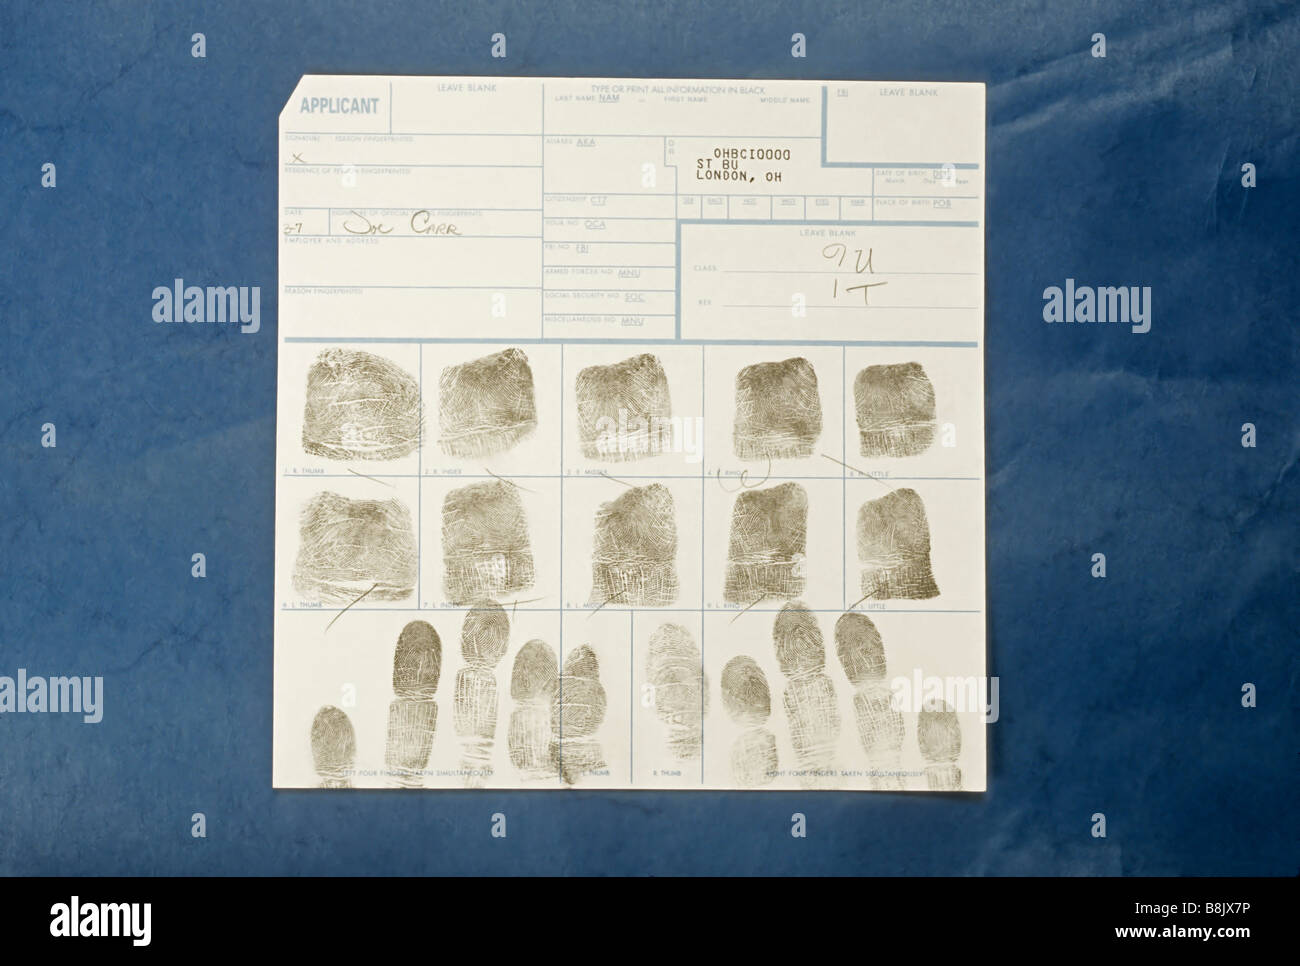 Les empreintes digitales de la police blotter, le crime, la justice pénale, Londres, en Ohio Banque D'Images